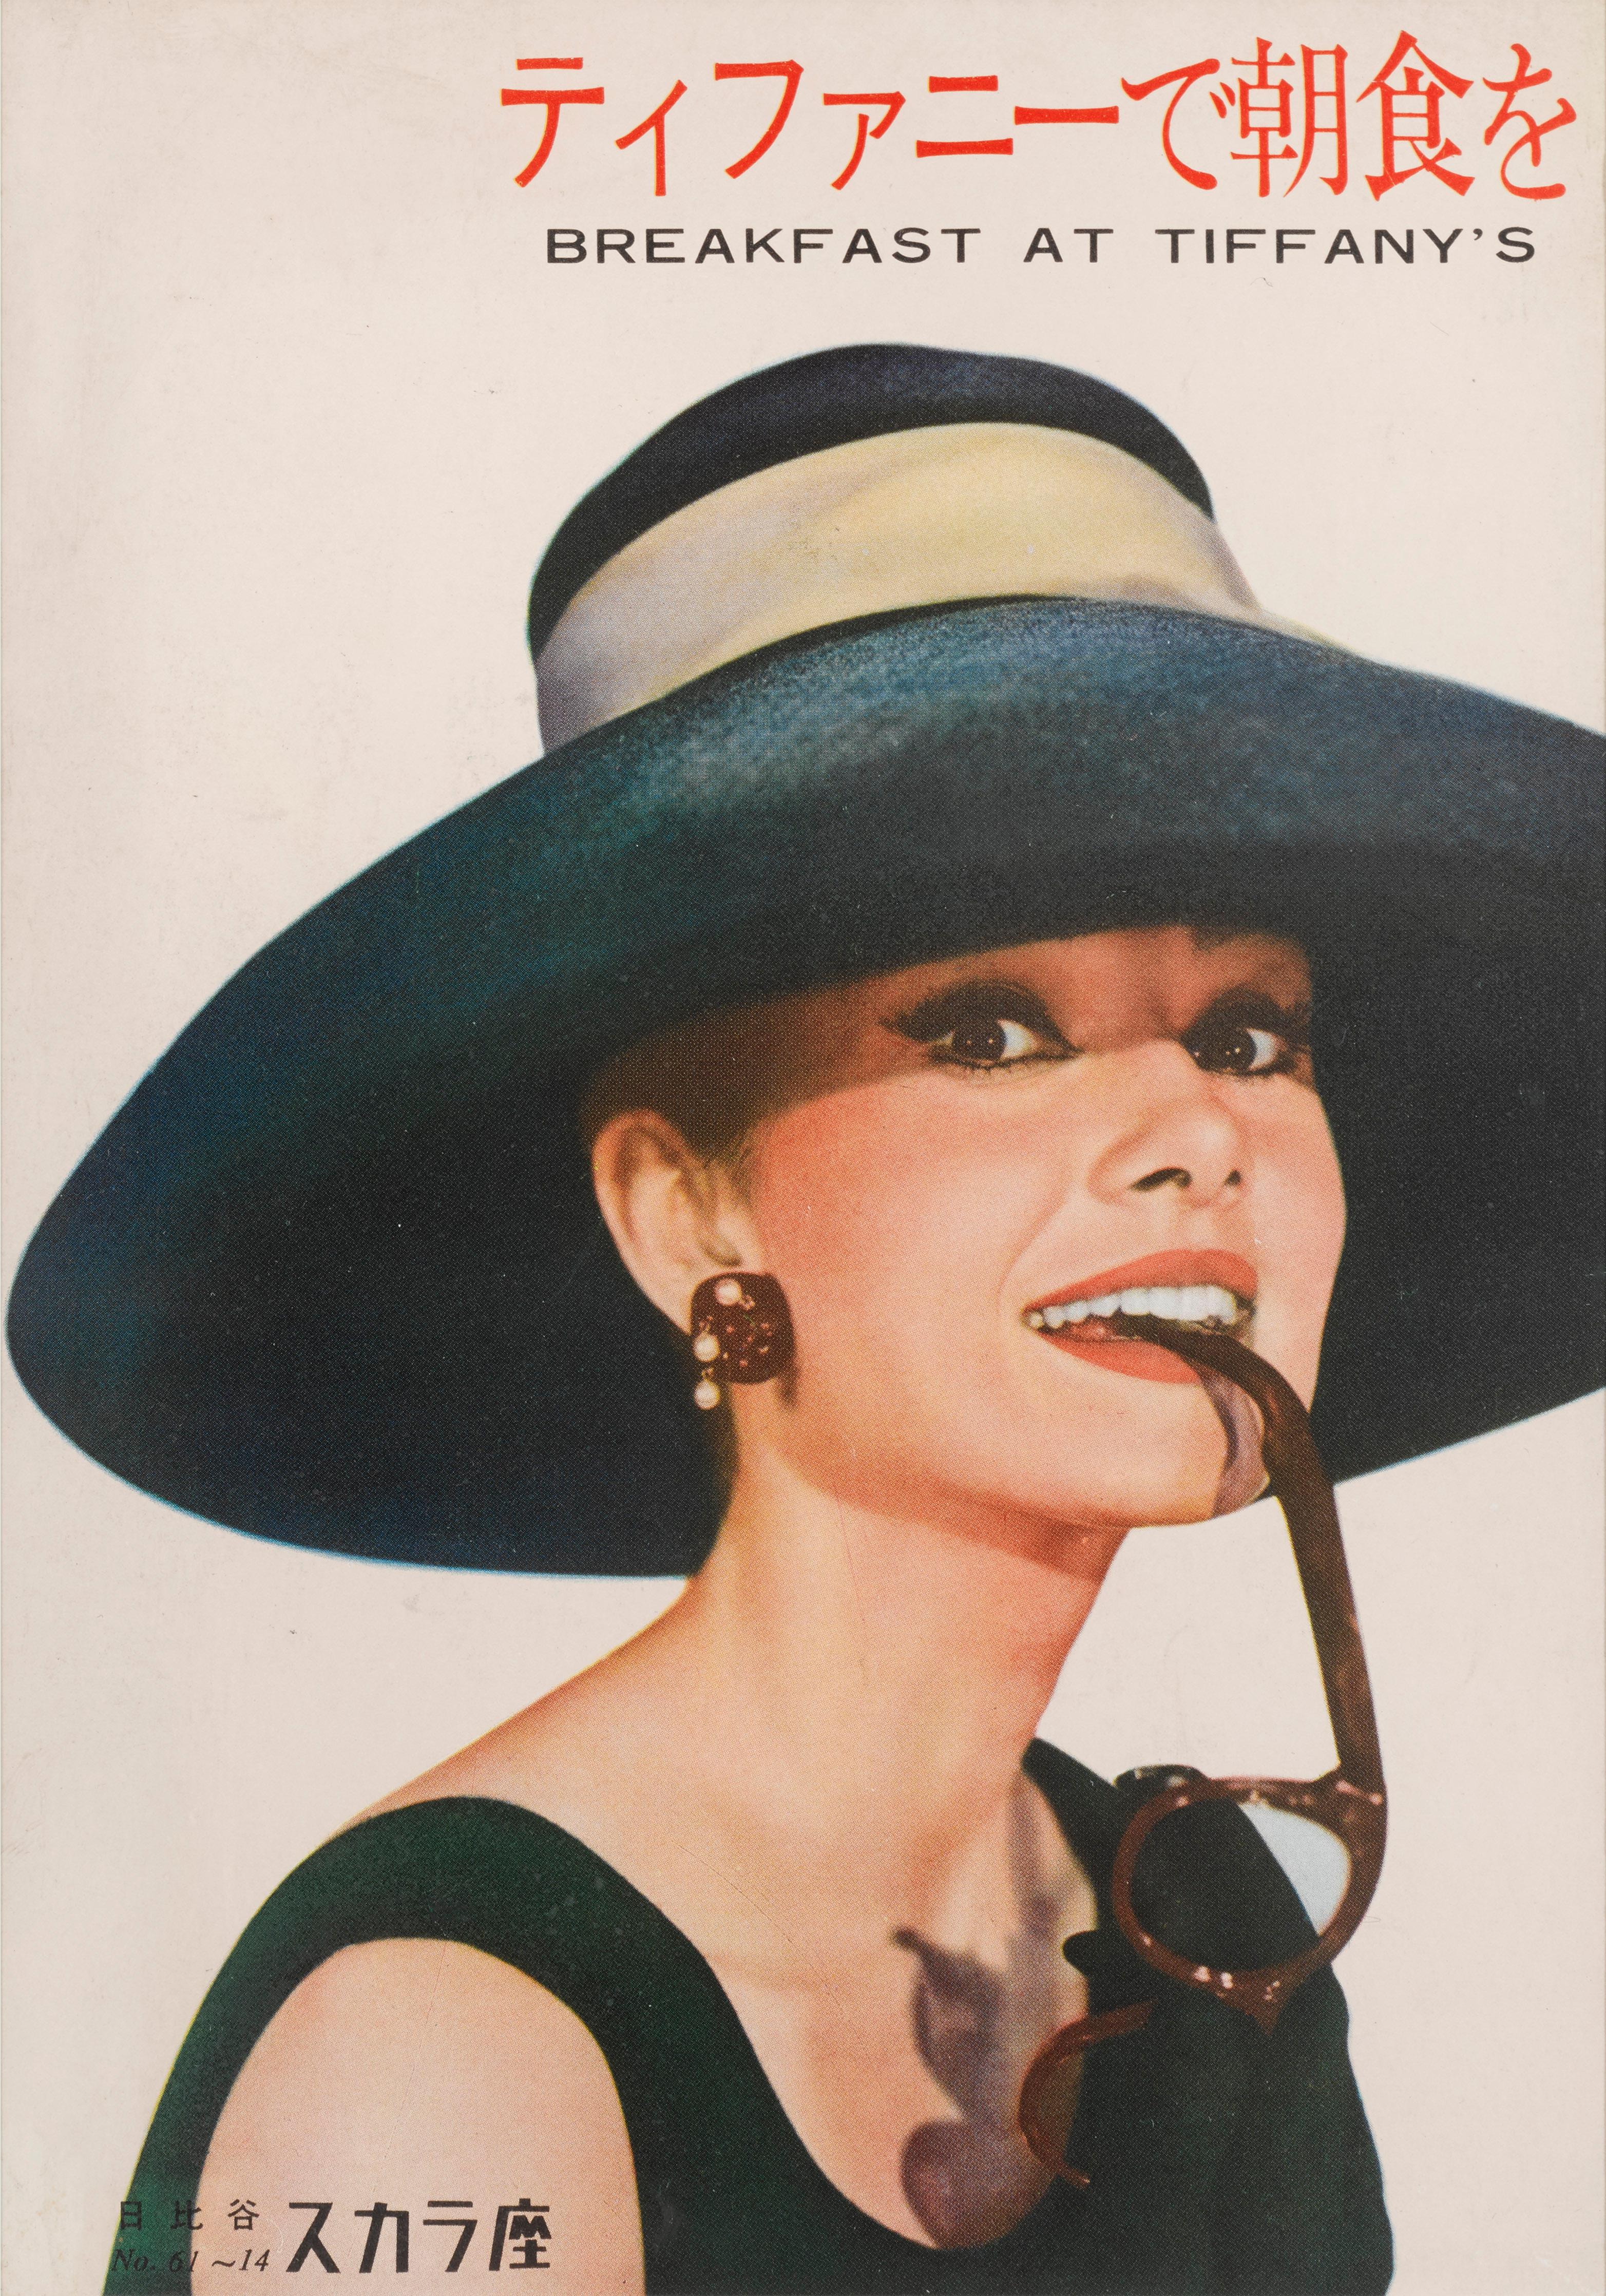 Originales japanisches Programmcover für die legendäre Audrey Hepburn-Komödie Romance aus dem Jahr 1961.
Der Film wurde von Blake Edwards inszeniert und zeigt Audrey Hepburn und George Peppard in den Hauptrollen. Dies ist zweifelsohne Hepburns